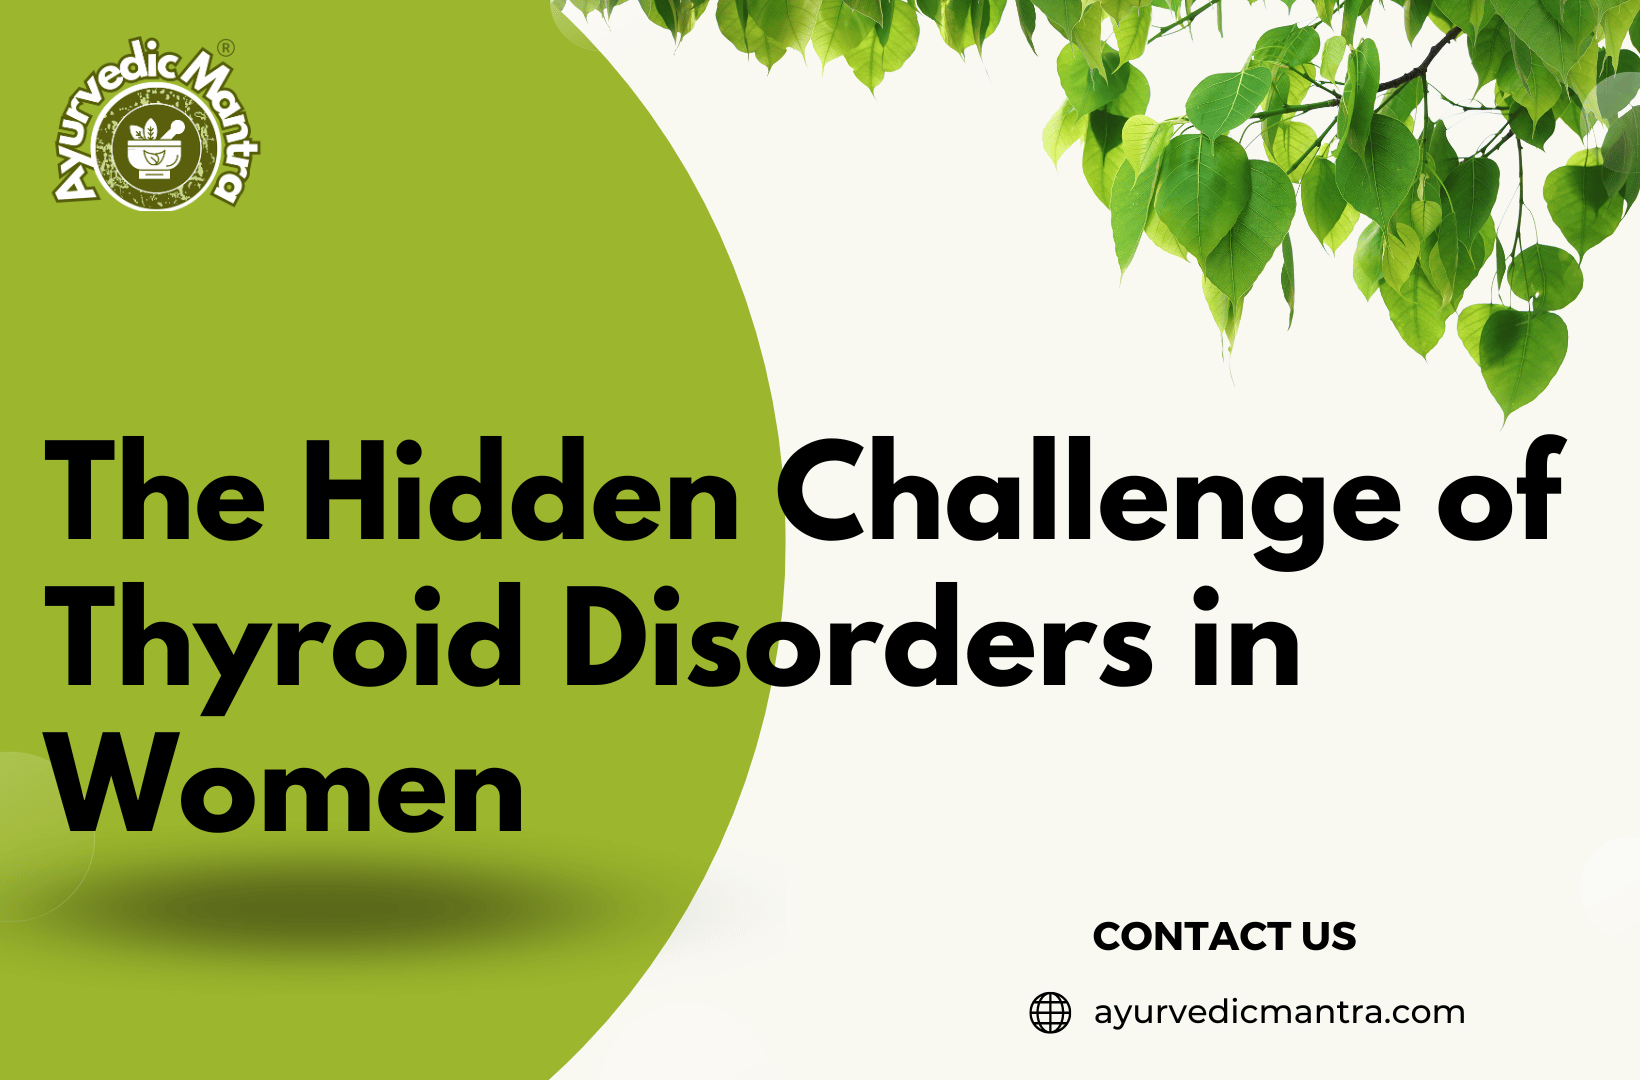 The Hidden Challenge of Thyroid Disorders in Women